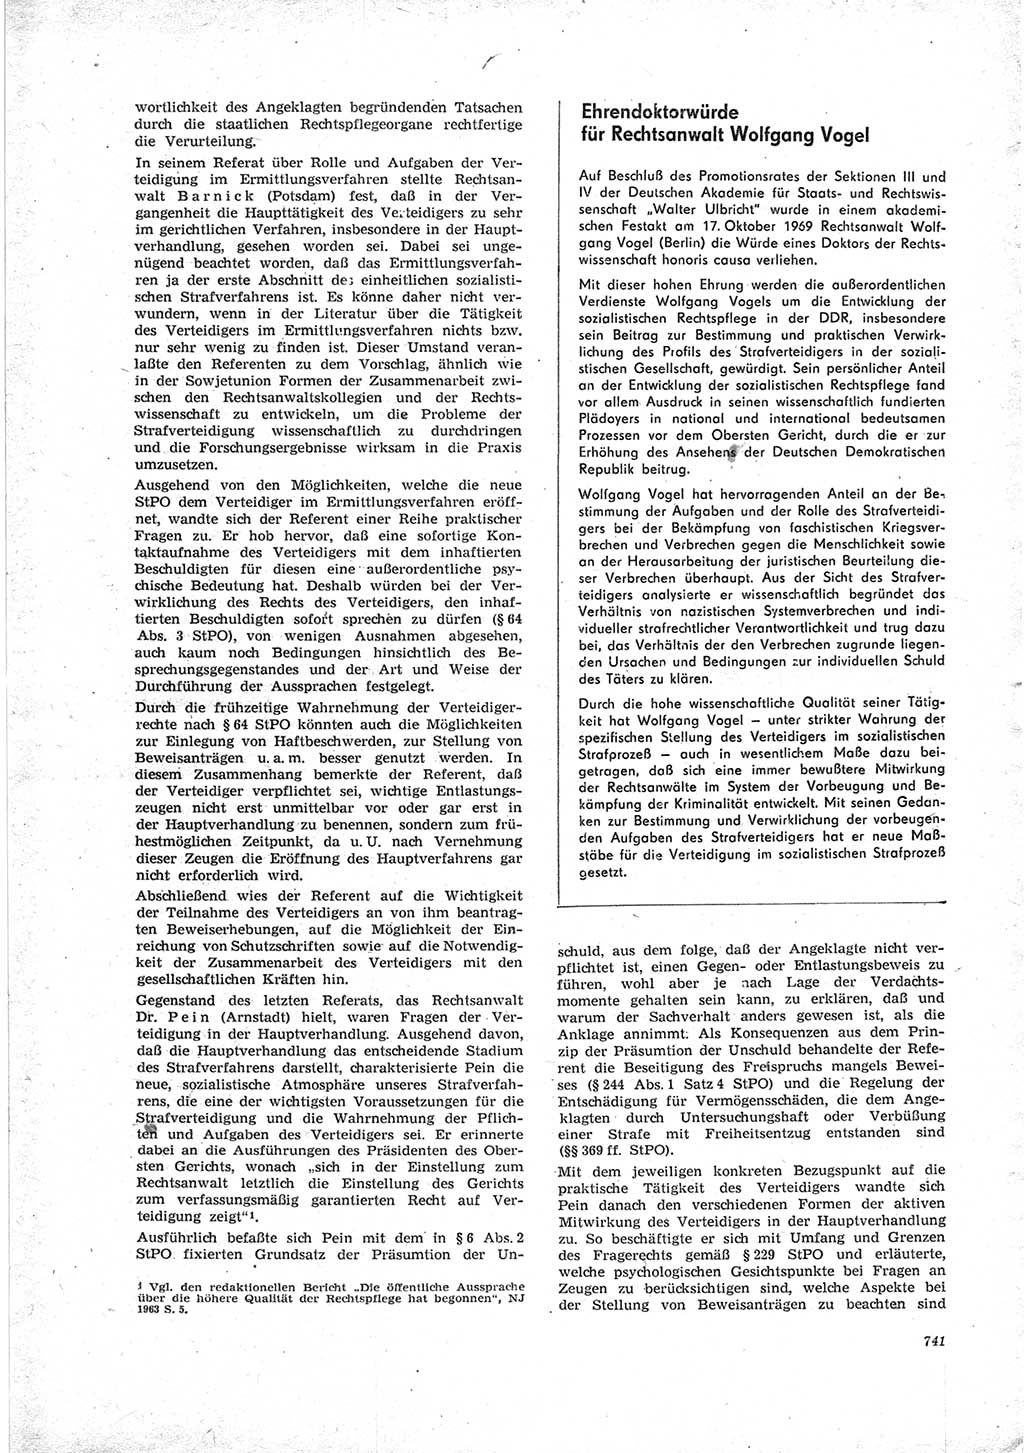 Neue Justiz (NJ), Zeitschrift für Recht und Rechtswissenschaft [Deutsche Demokratische Republik (DDR)], 23. Jahrgang 1969, Seite 741 (NJ DDR 1969, S. 741)